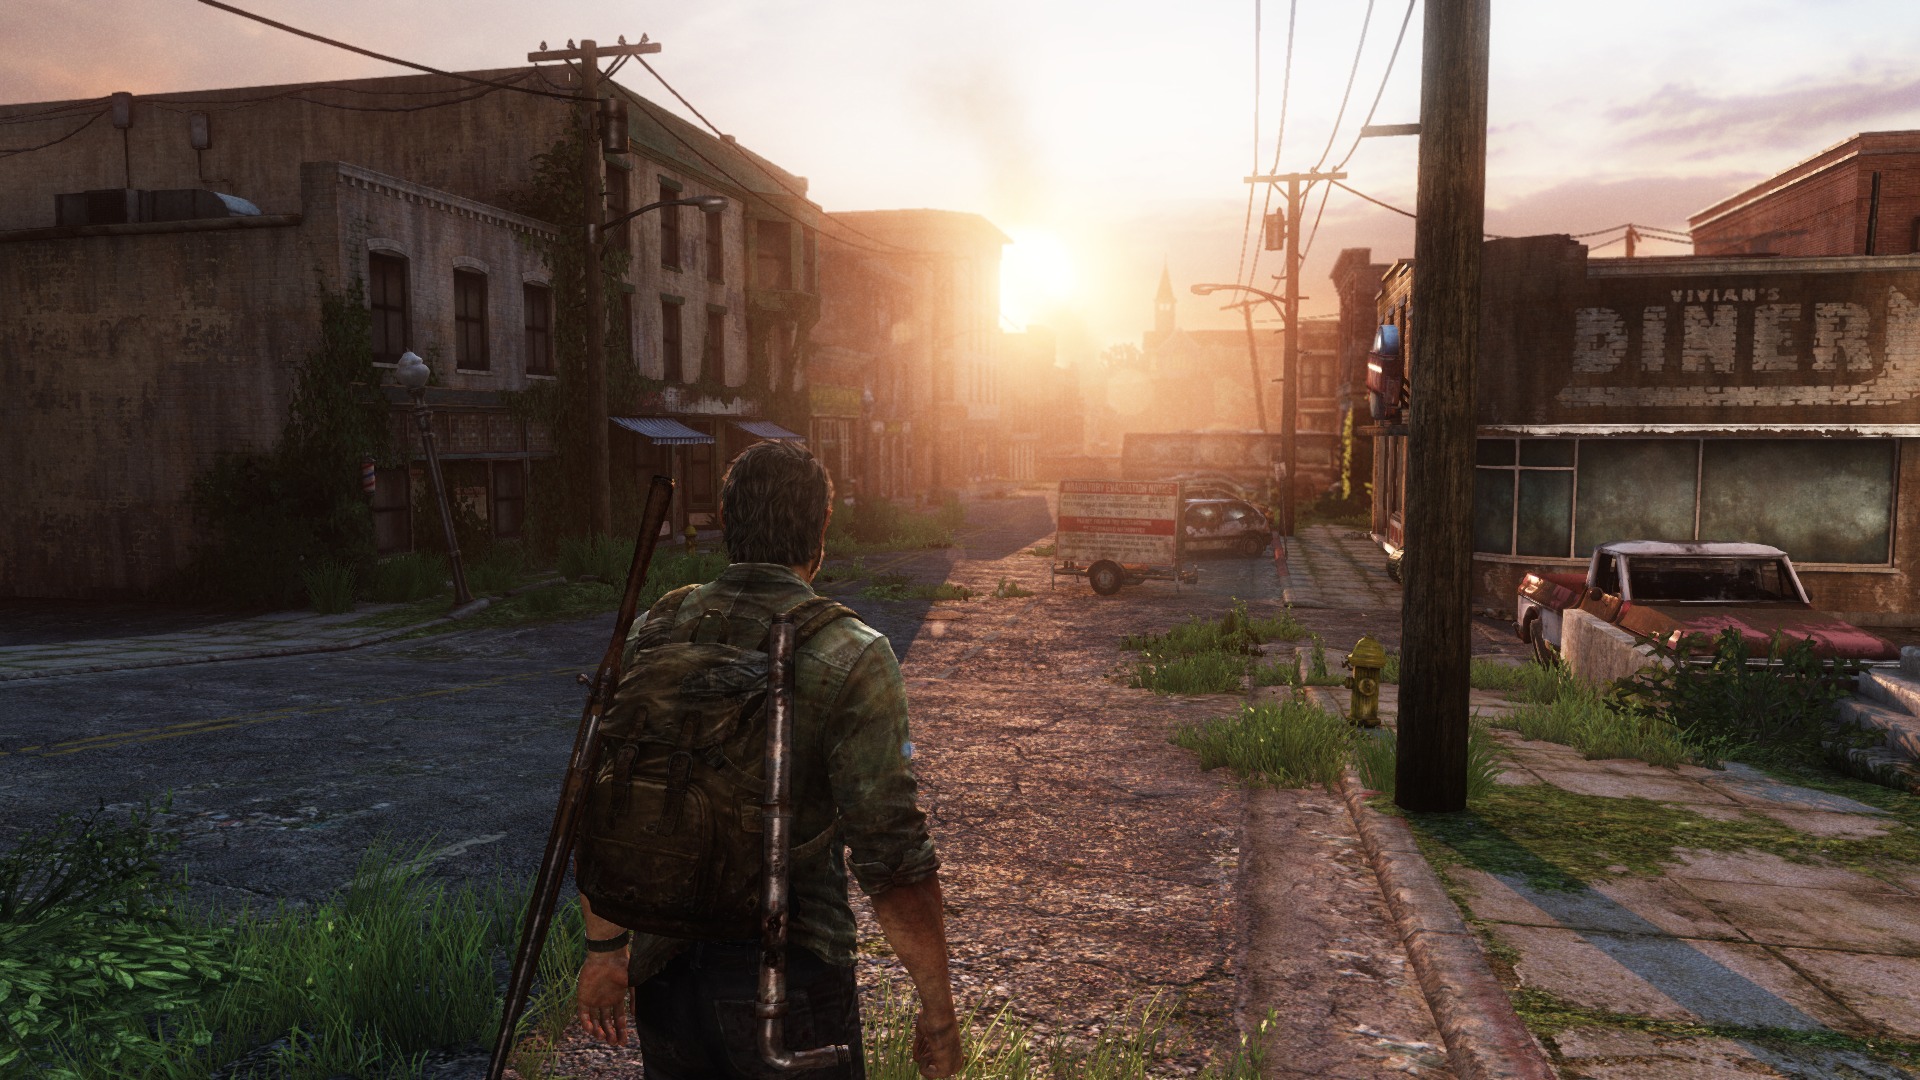 Detonado de The Last of Us: o melhor jogo exclusivo do PS3 em 2013